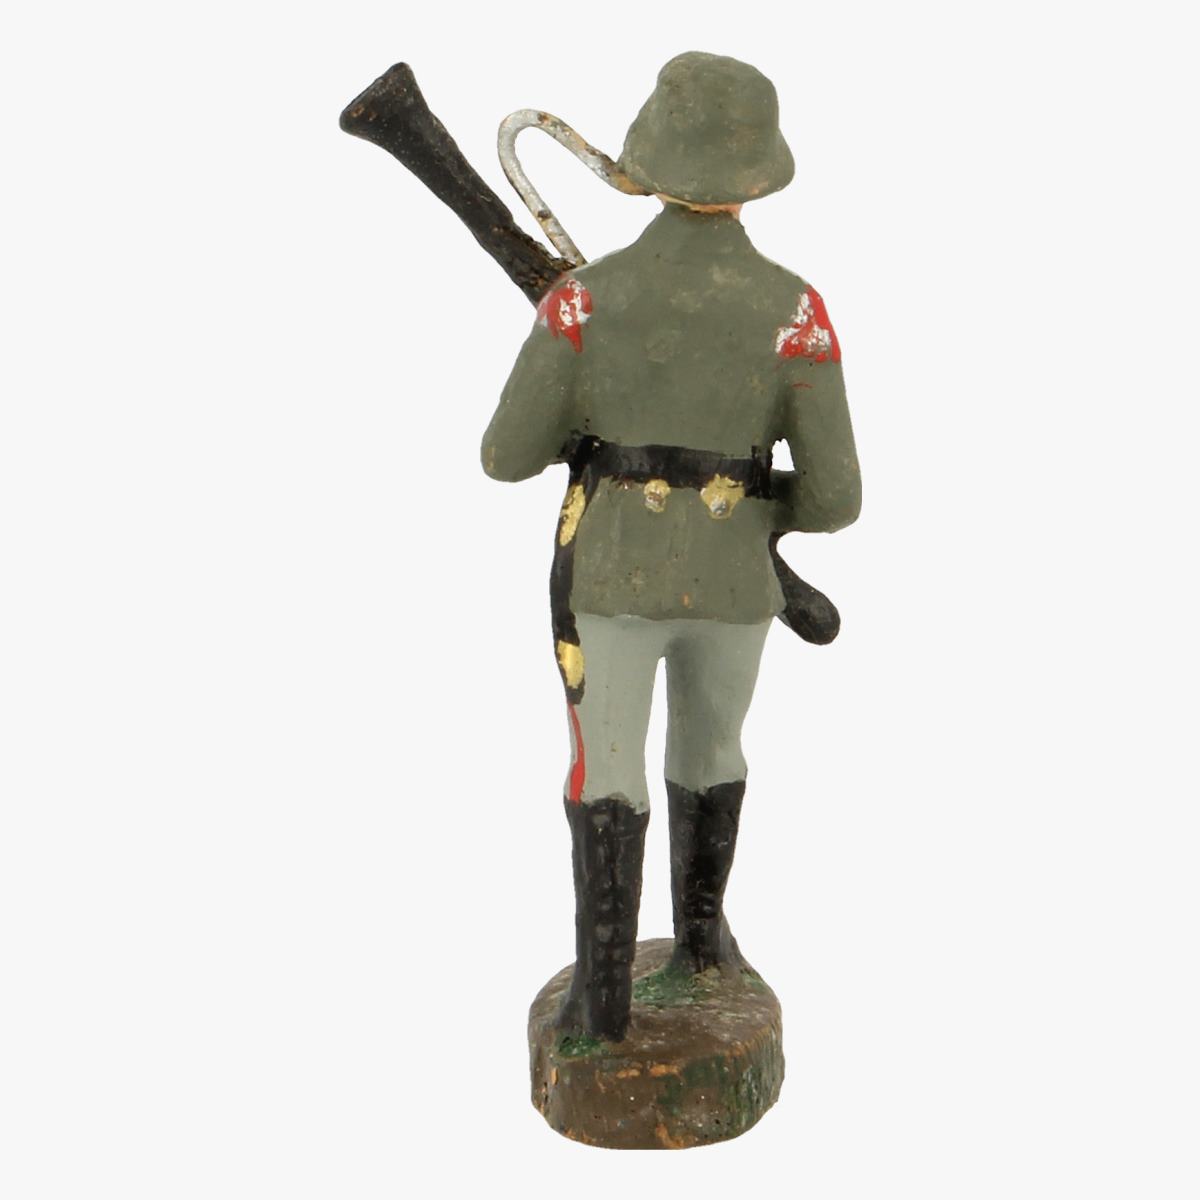 Afbeeldingen van elastolin soldaatje Germany